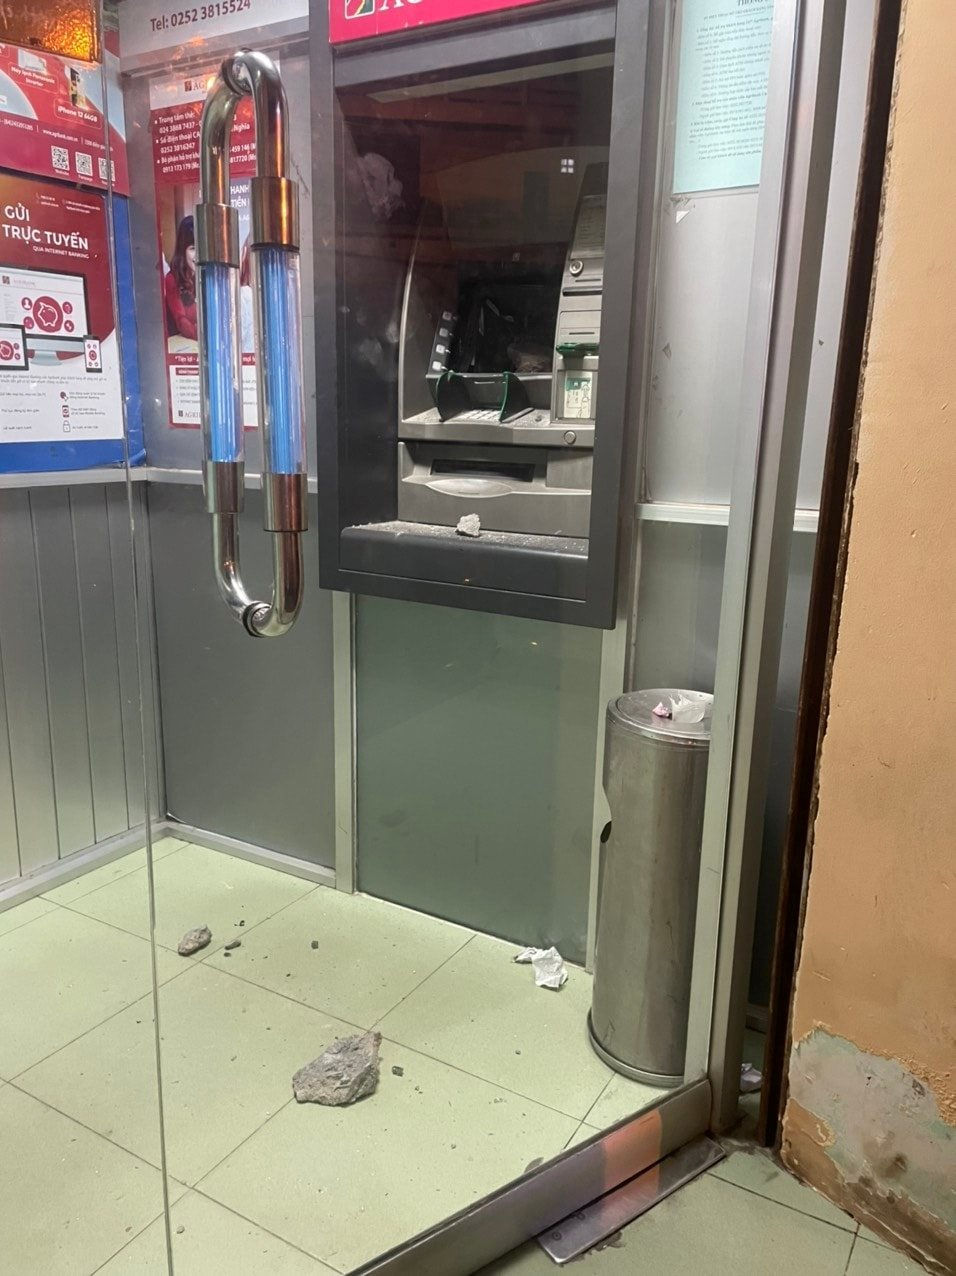 Bình Thuận: Công an bắt “nóng” đối tượng dùng đá đập bể trụ ATM sau 2 giờ gây ra vụ việc - Ảnh 1.